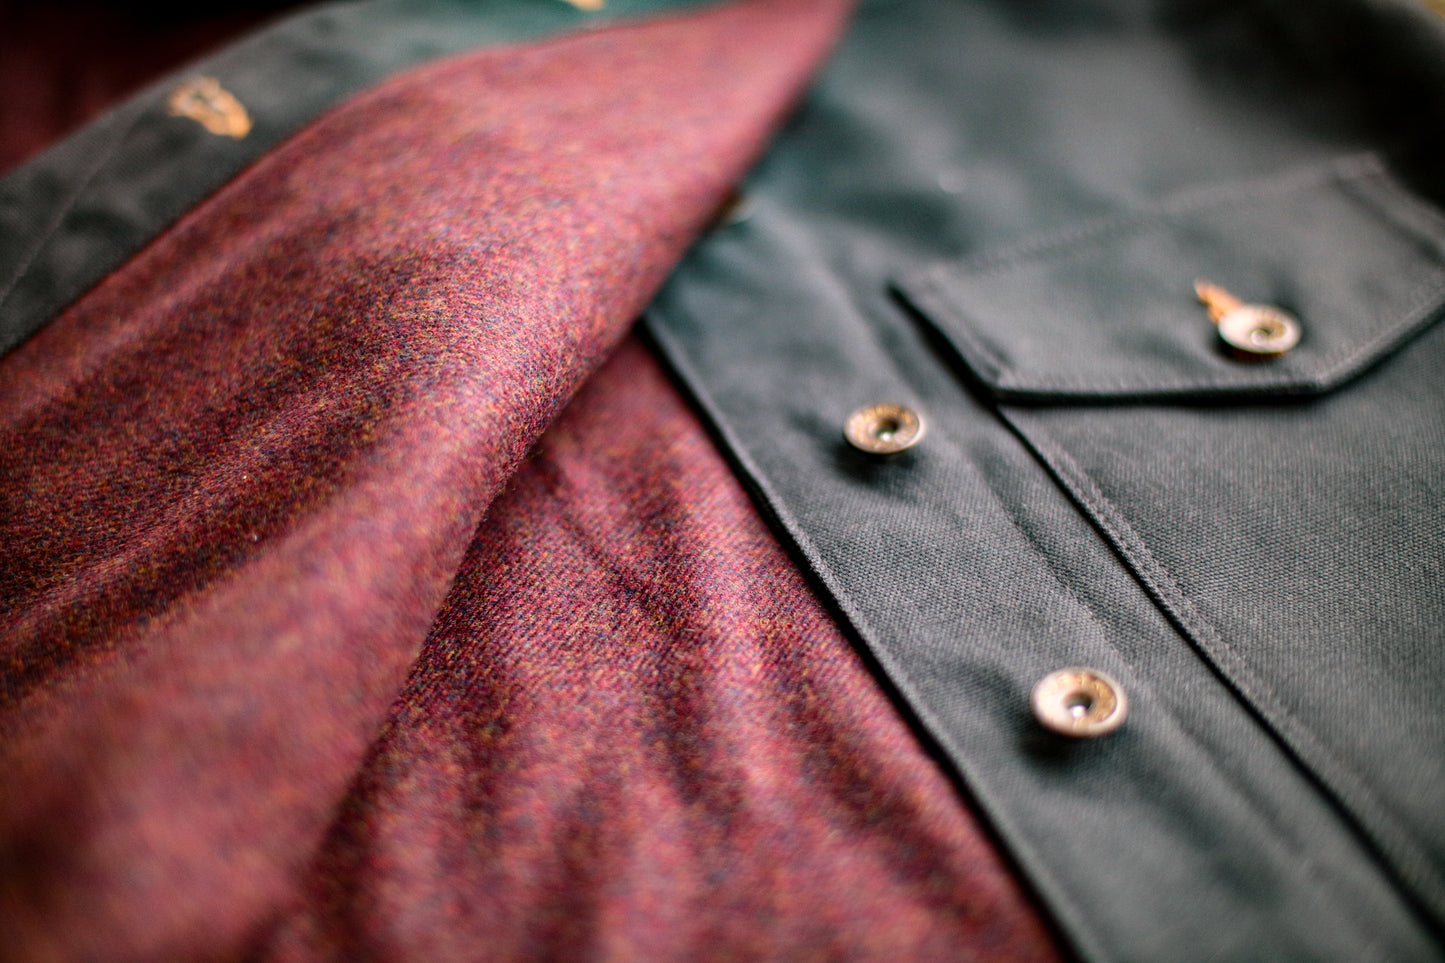 Men's James 100% wool lined canvas vest | Basalt